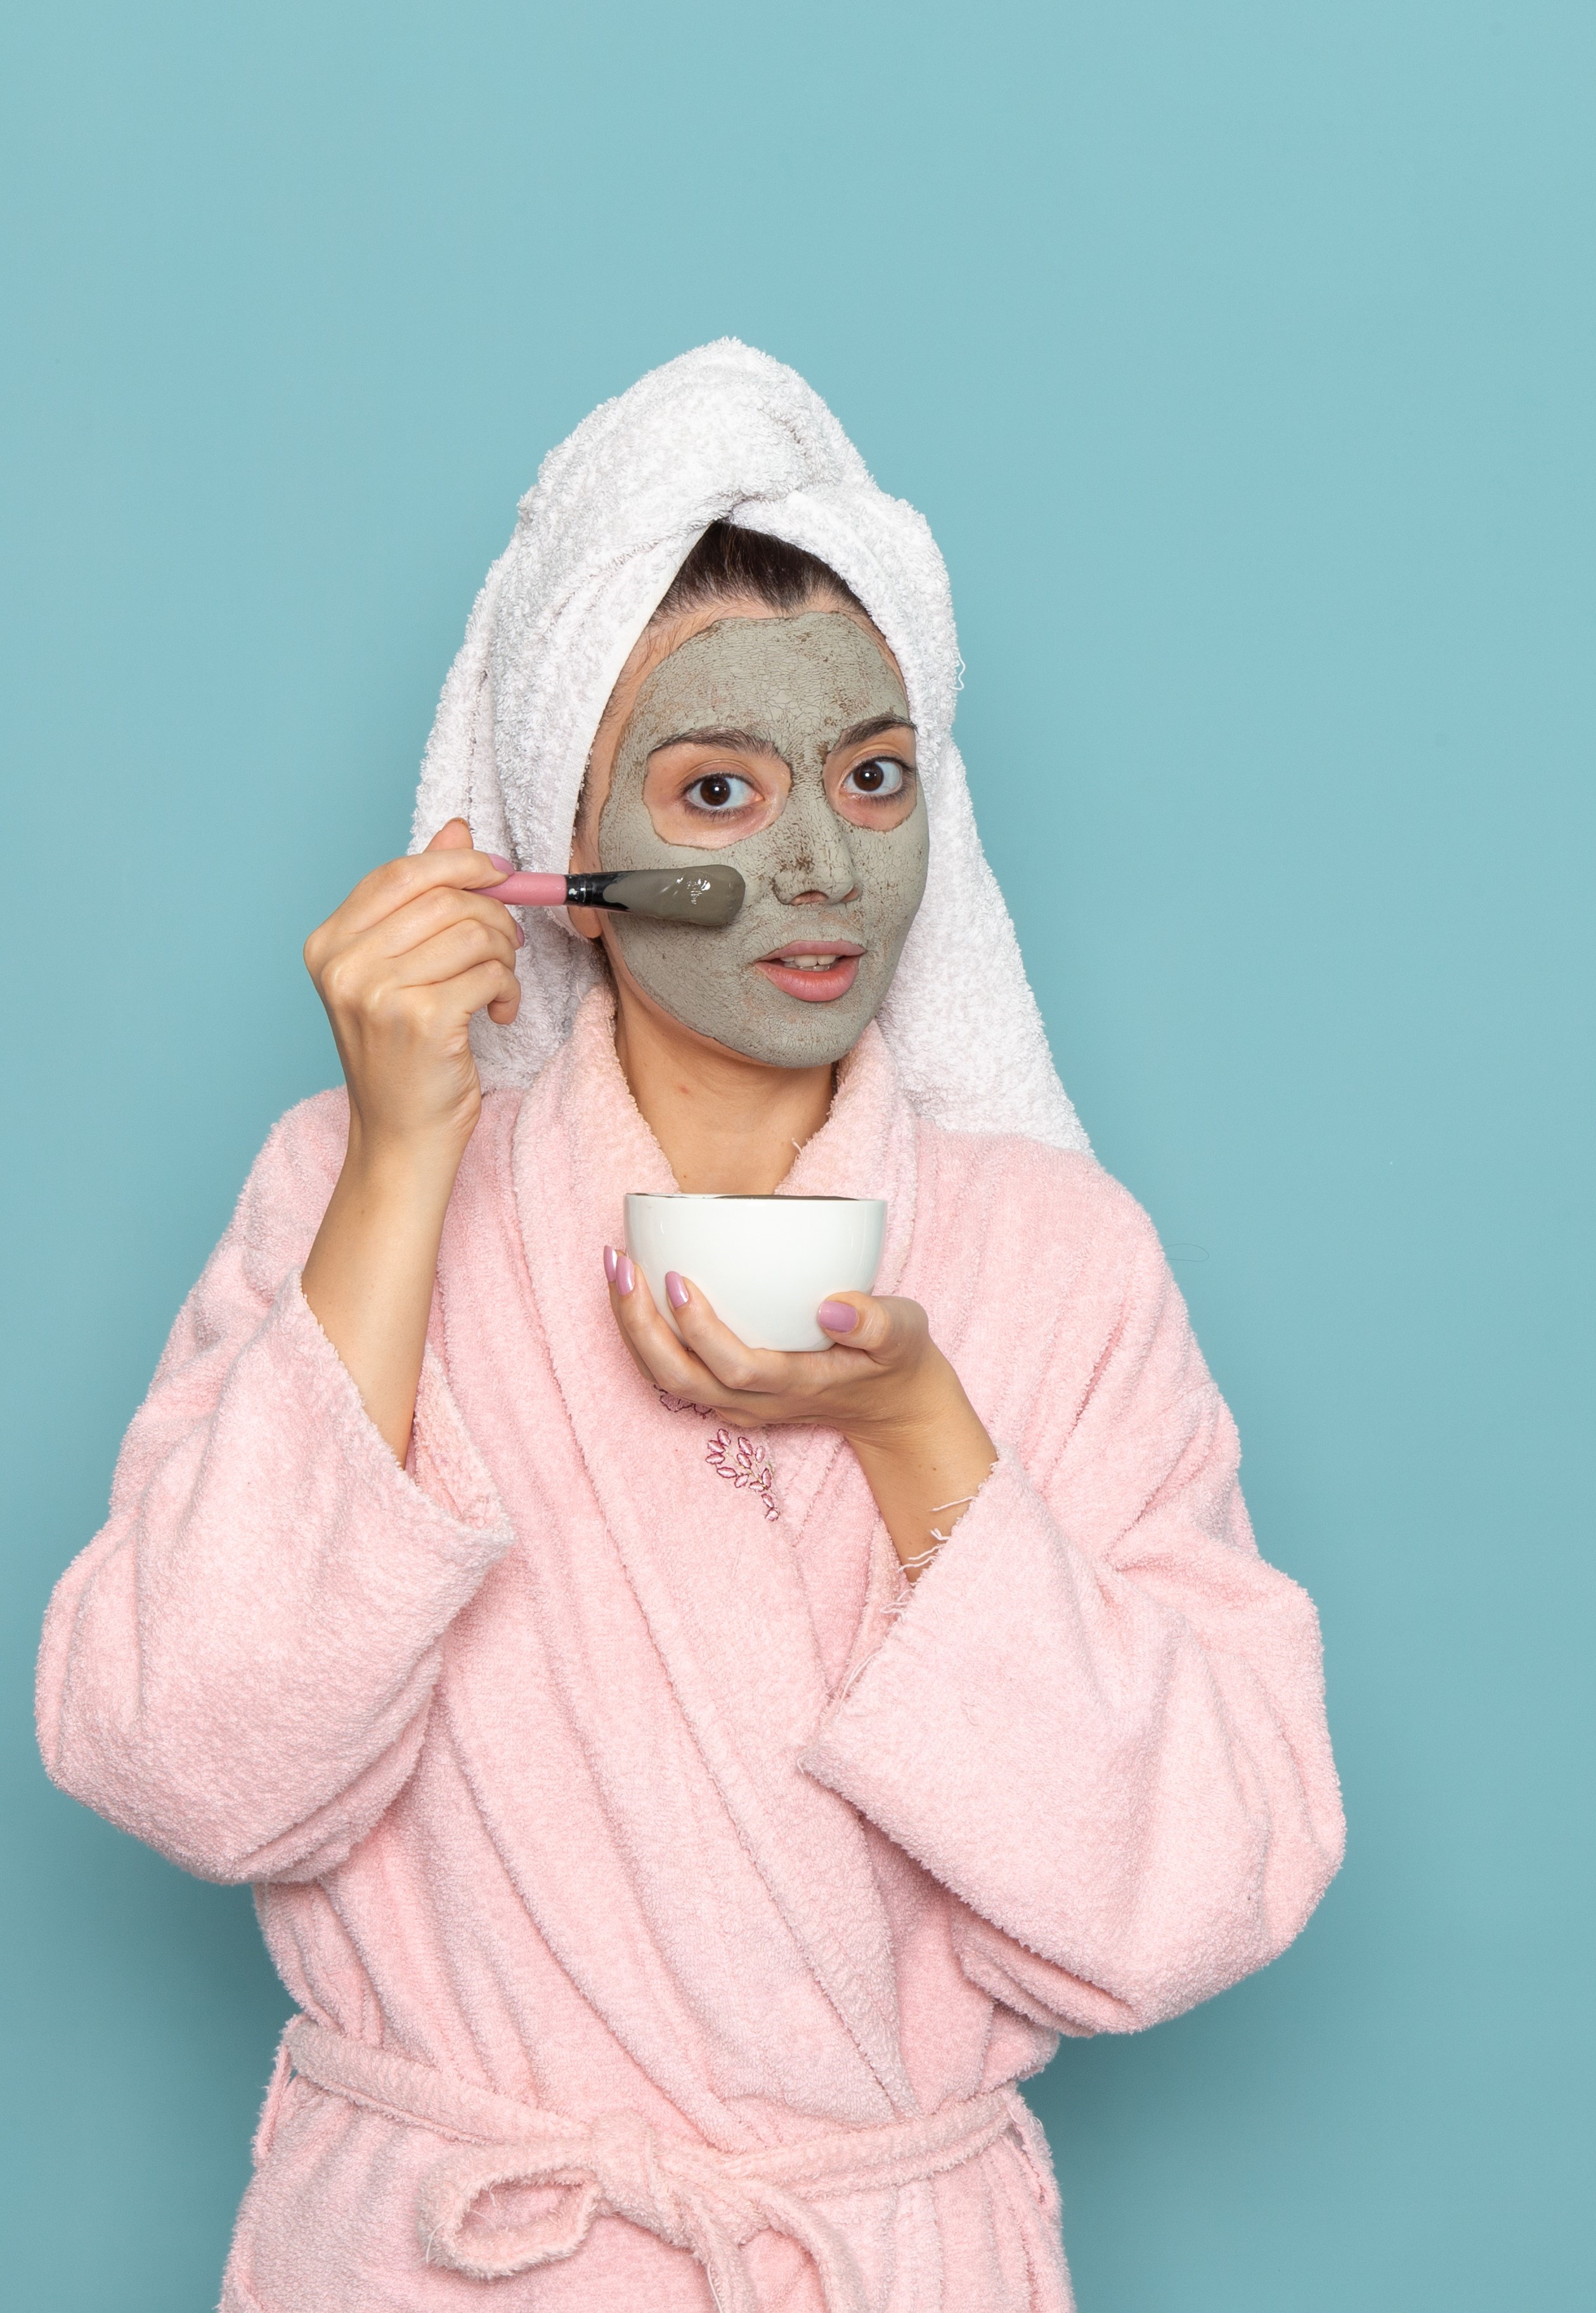 7 Masker Alami untuk Wajah: Tips dan Resep Mudah untuk Kulit Bersinar!